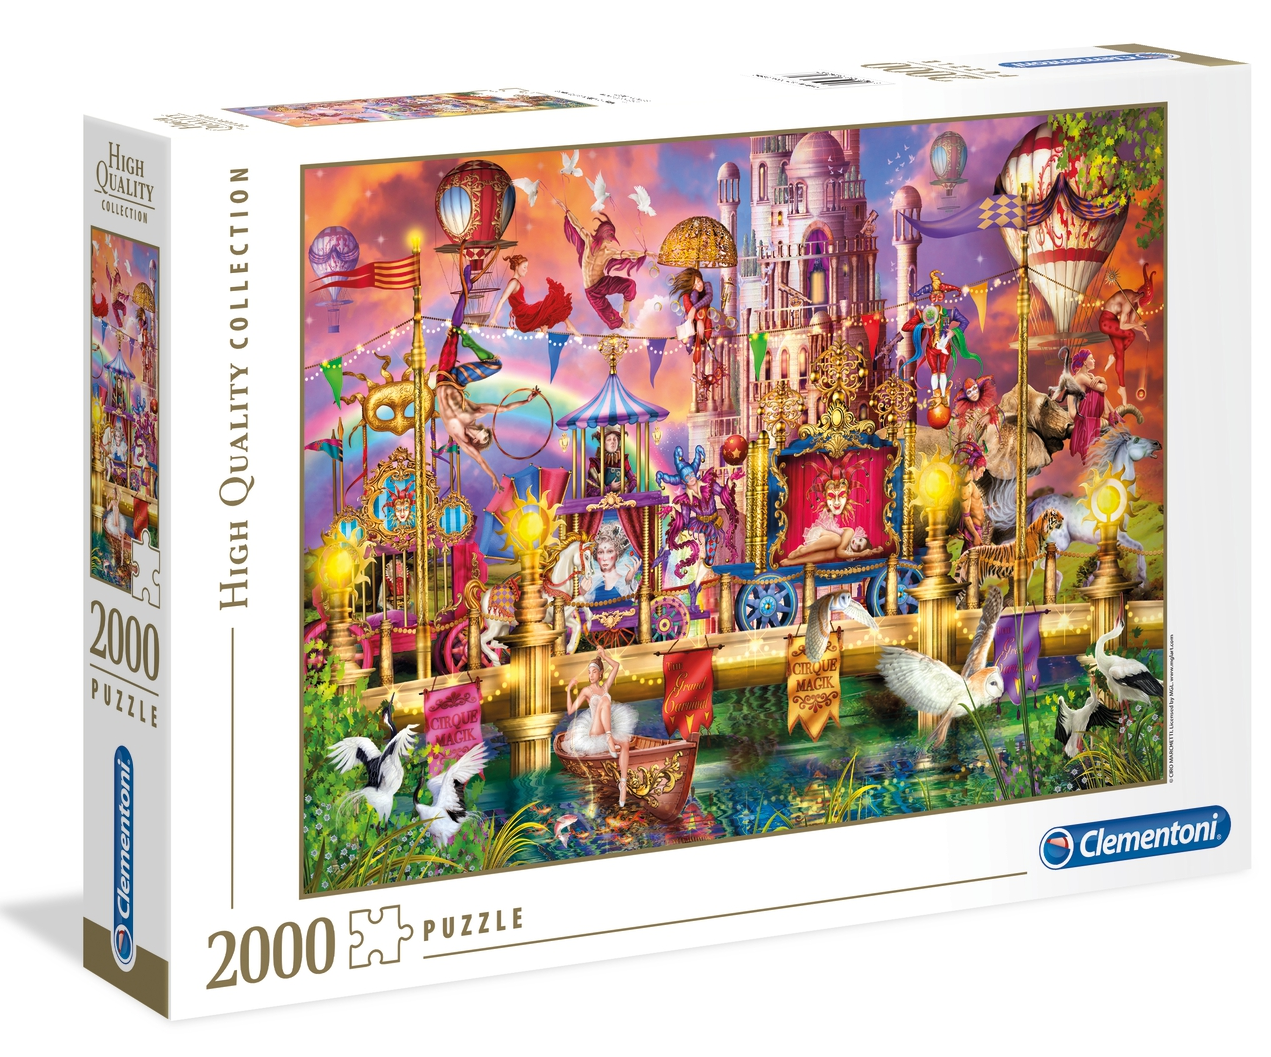 Puzzle 2000 piezas -El Circo- Clementoni